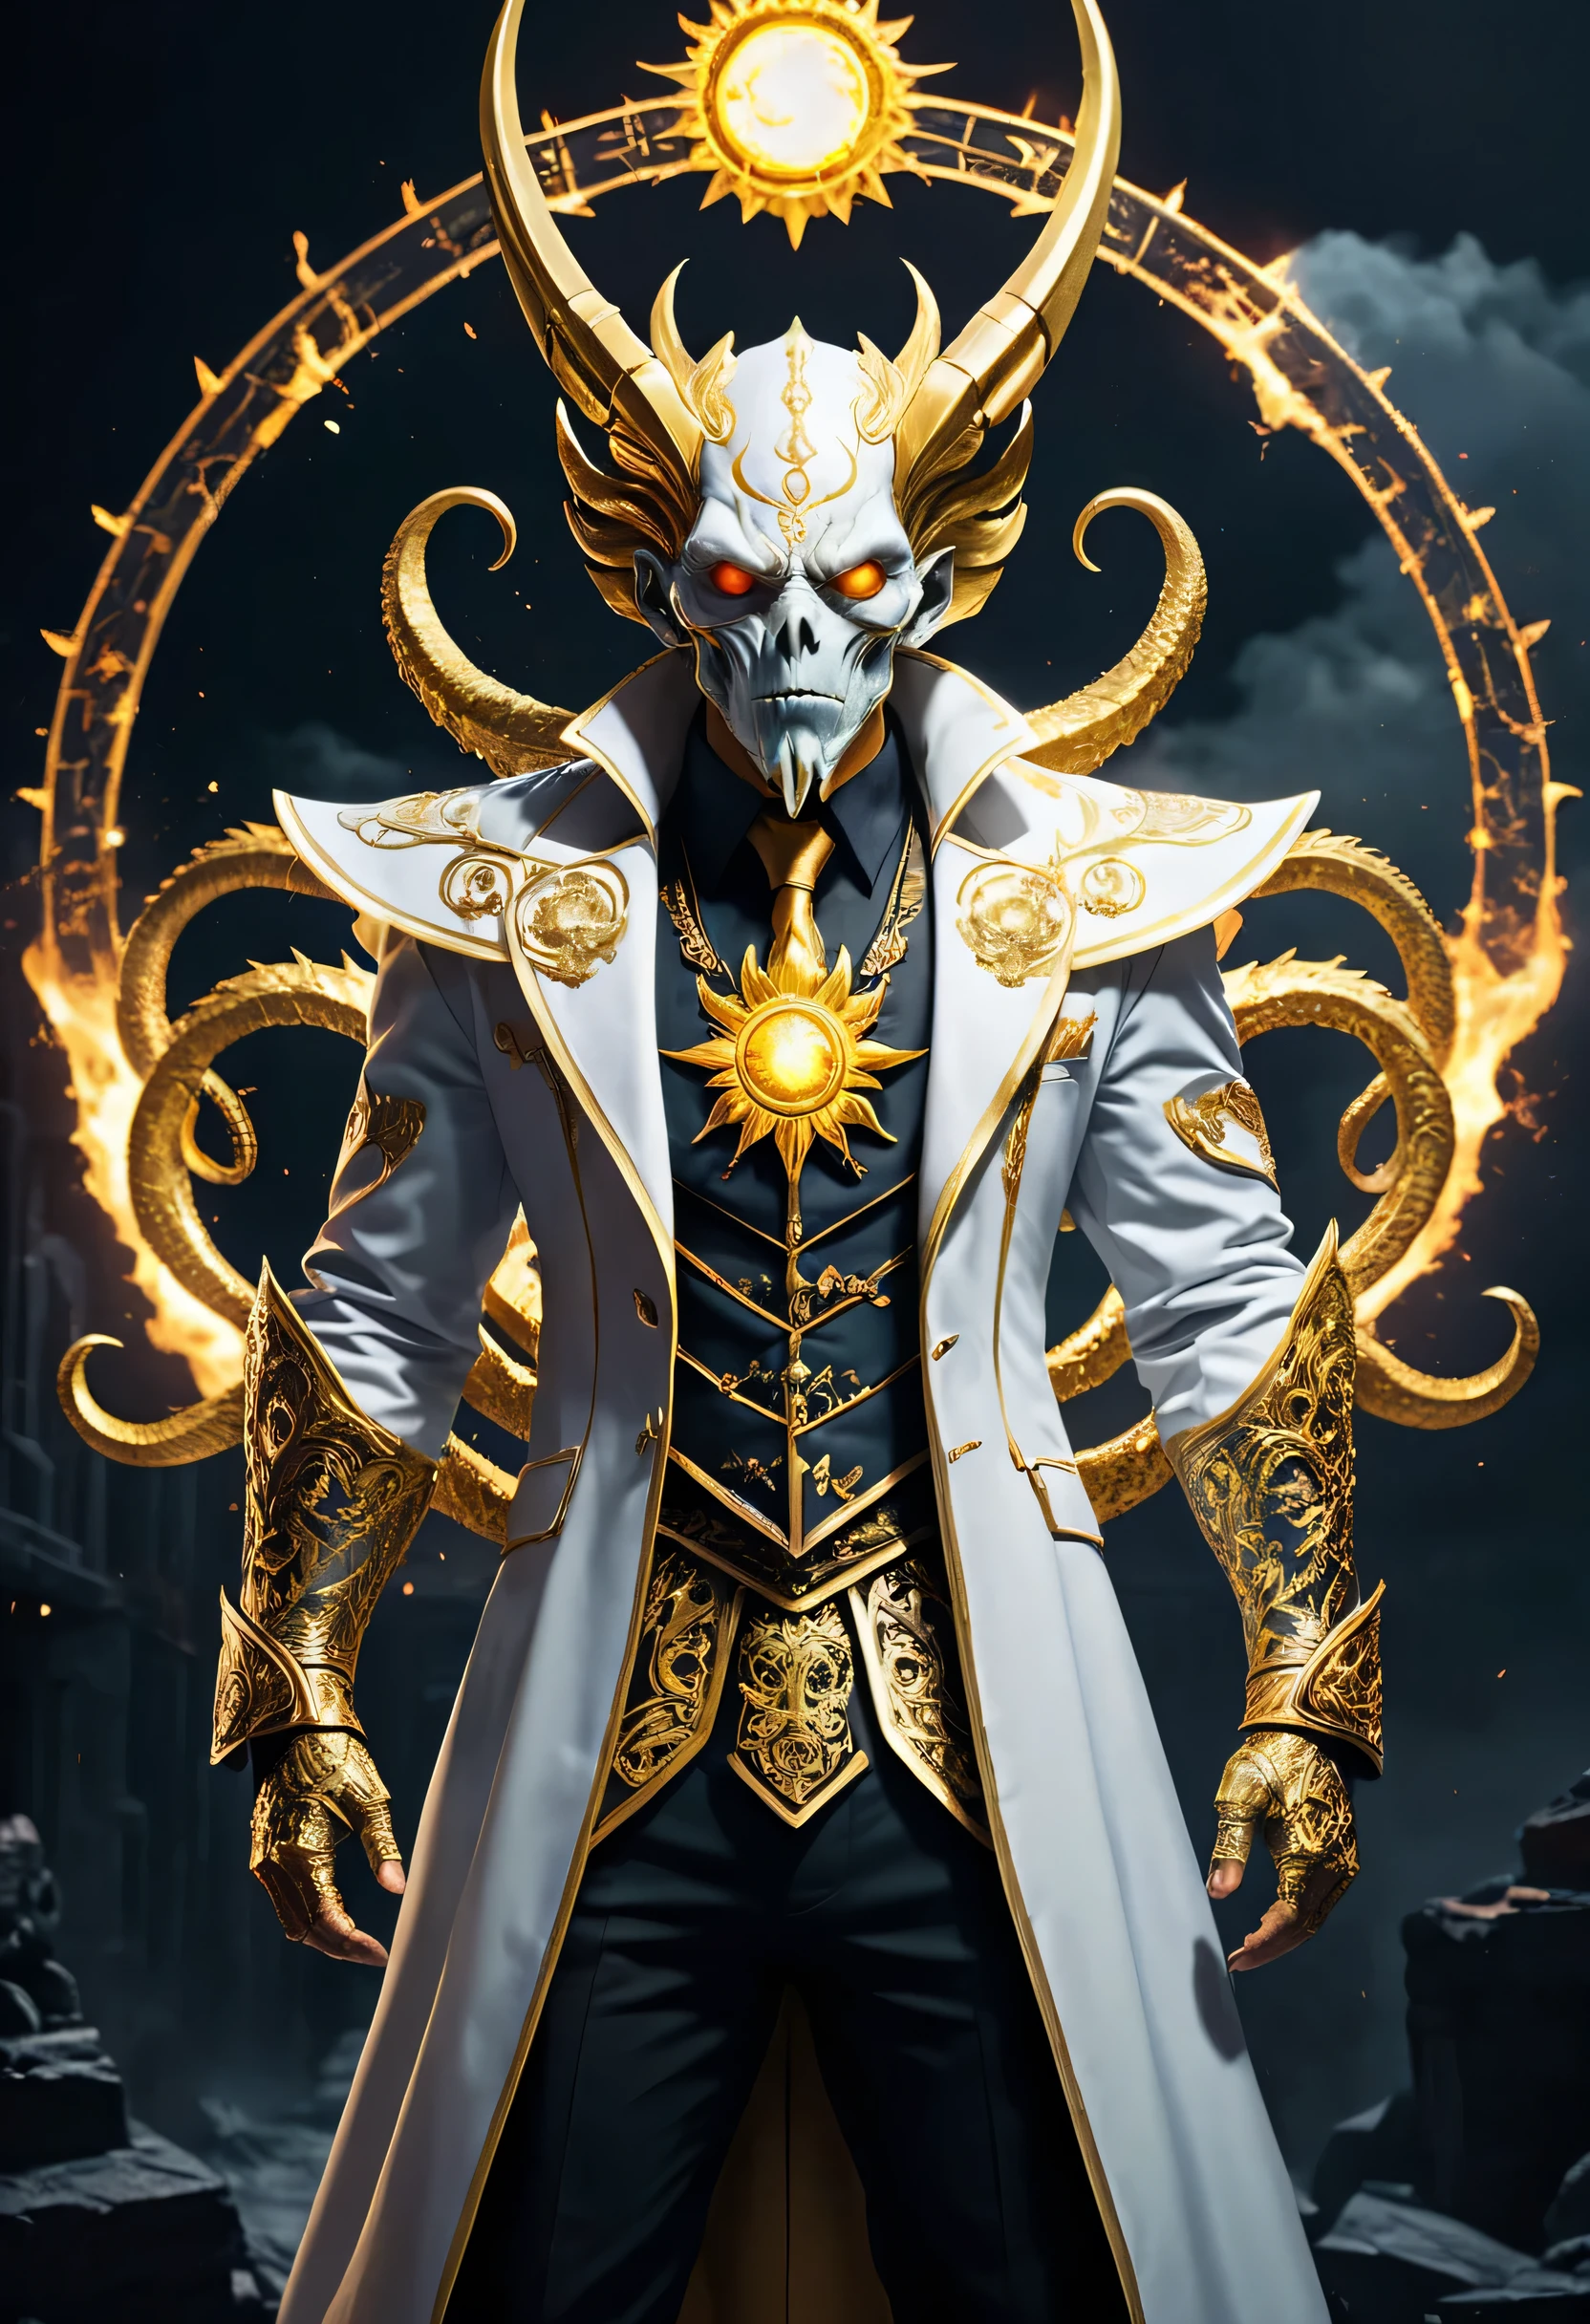 太陽神クトゥルフは象徴的な英雄の太陽神をテーマにしたバージョンです, 白と金の衣装に身を包んだ, 彼のスーツは太陽の力を示すためにデザインされた, 太陽神とスーパーヒーローの融合を体現する. 暗い & 爆発的な, 白と金のスタイル, バロック風のディテール, ダイナミックなアクションポーズ. マイク・デルガド・ジュニアのアートスタイル. (((傑作, 複雑なディテール, 運動能力, メガピクセル, 完璧な光))), 贅沢な贅沢, 映画のような, 写真, コンセプチュアルアート, 暗い fantasy, ナイトコア風,The background is a blend of 映画のような 暗いness and fantasy elements, 微妙な混沌を伴って. 全体的な構成は視覚的に魅力的であり、概念的にも興味深い。., 暗い fantasy, 写真, 映画のような, コンセプチュアルアート